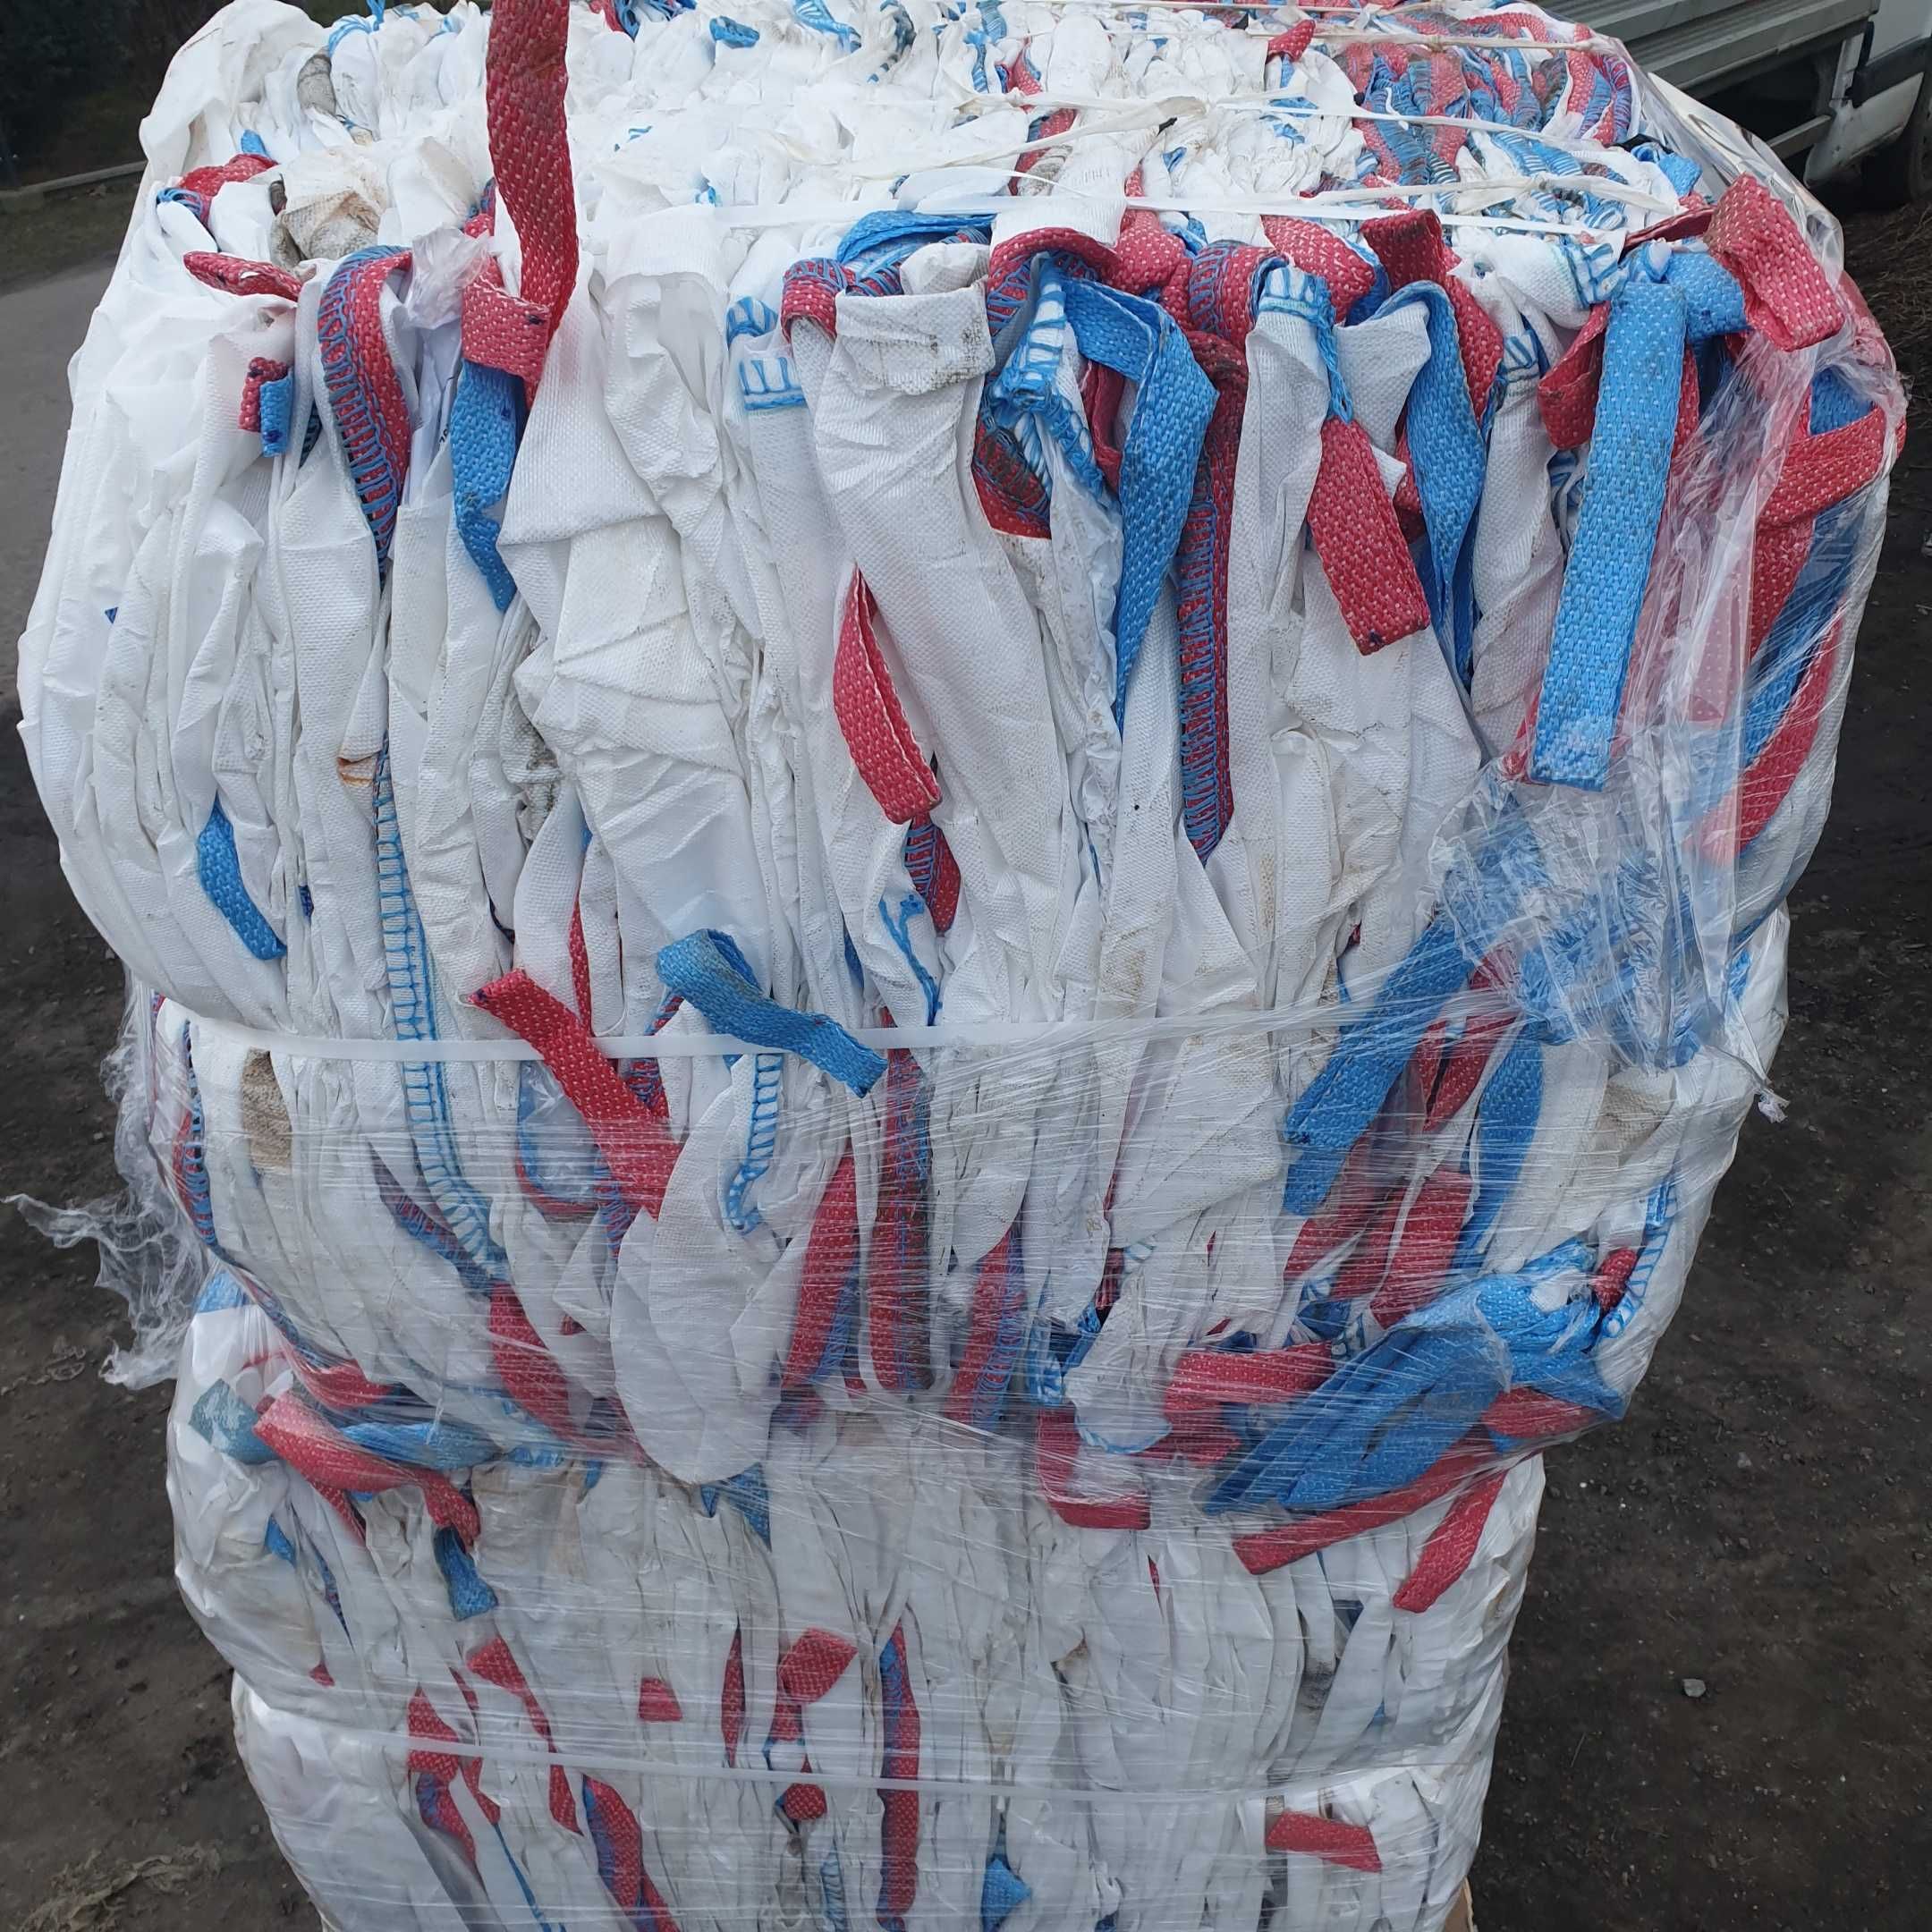 Worek Big Bag 110x95x95 cm zboża, odpady, liści